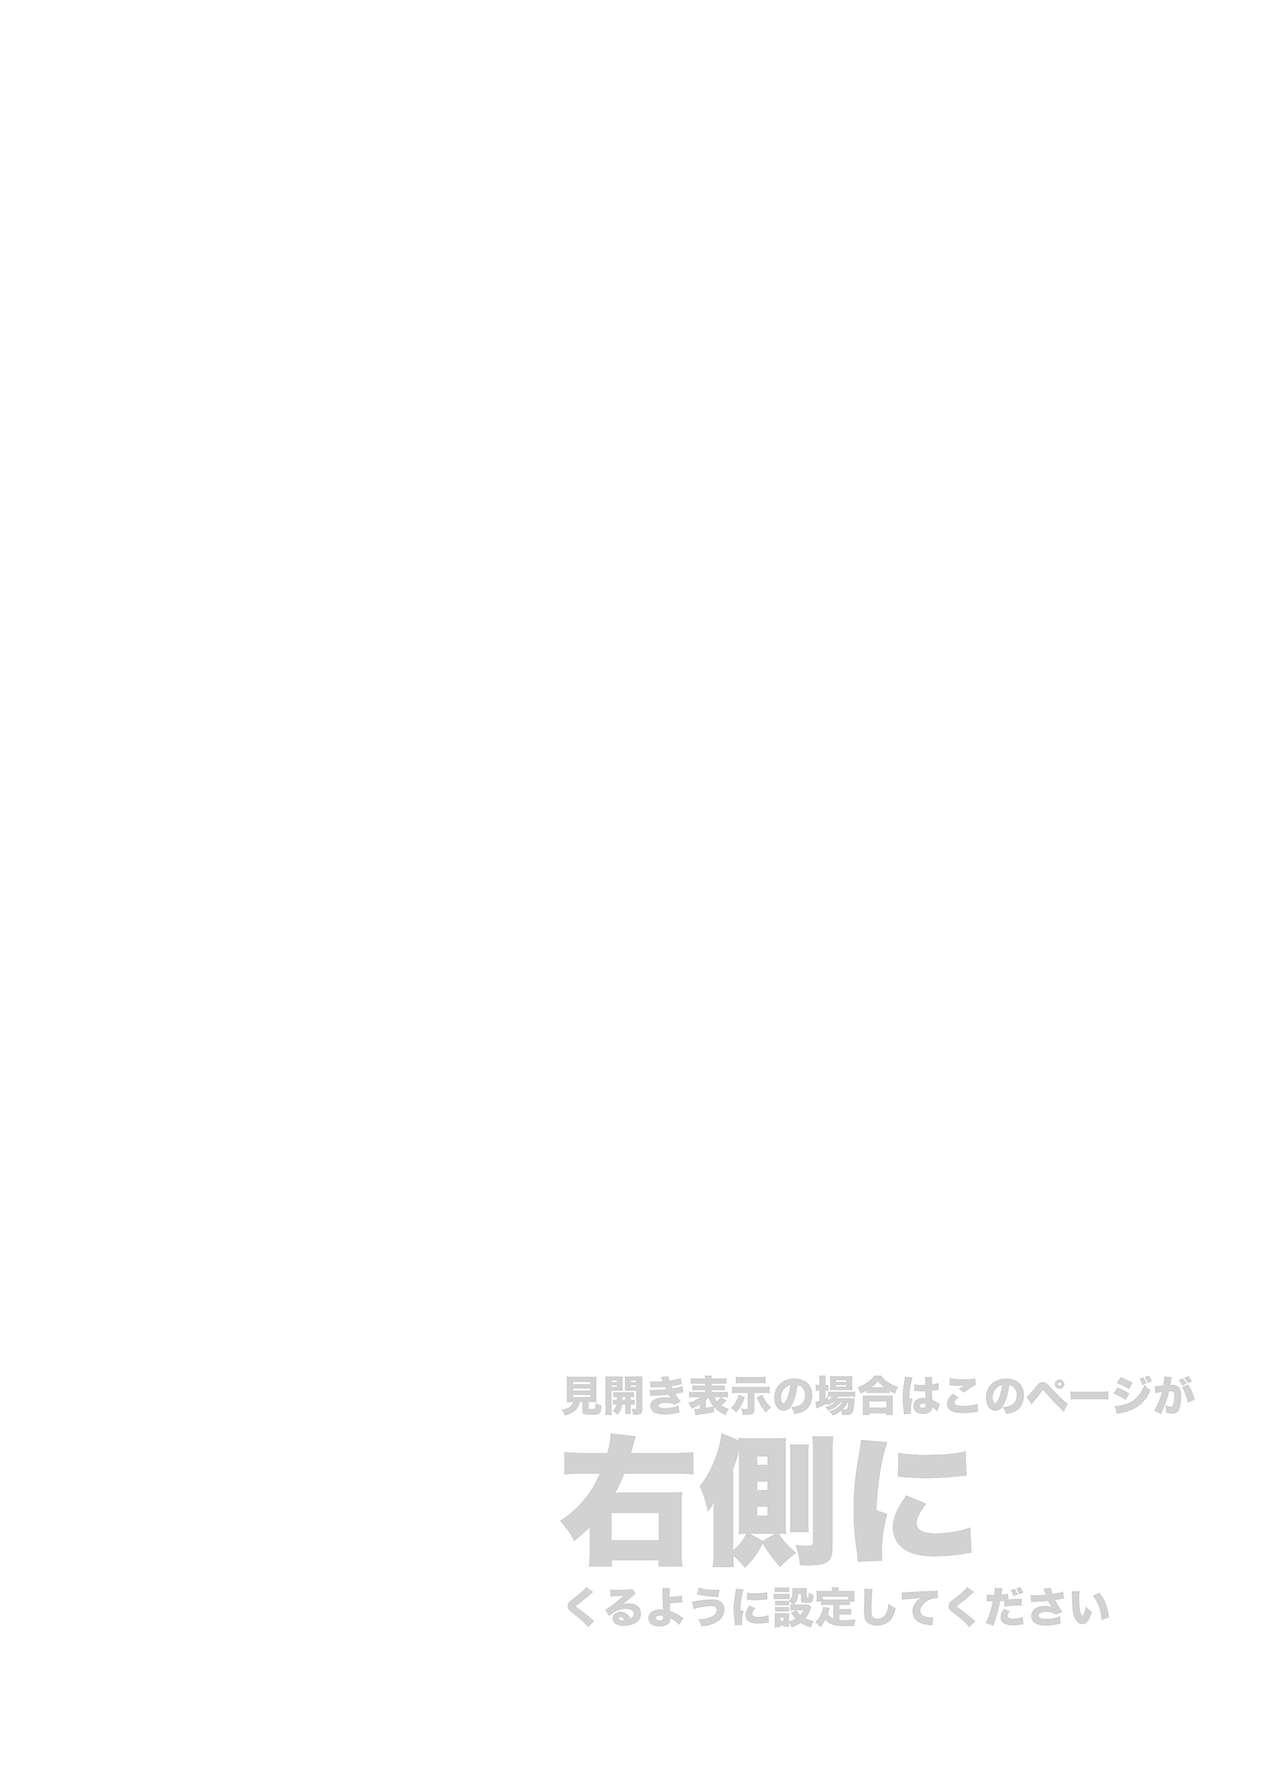 Hard Kore wa Kintore Nanda Honto dayo Shinjite - Mobile suit gundam tekketsu no orphans Peruana - Page 2